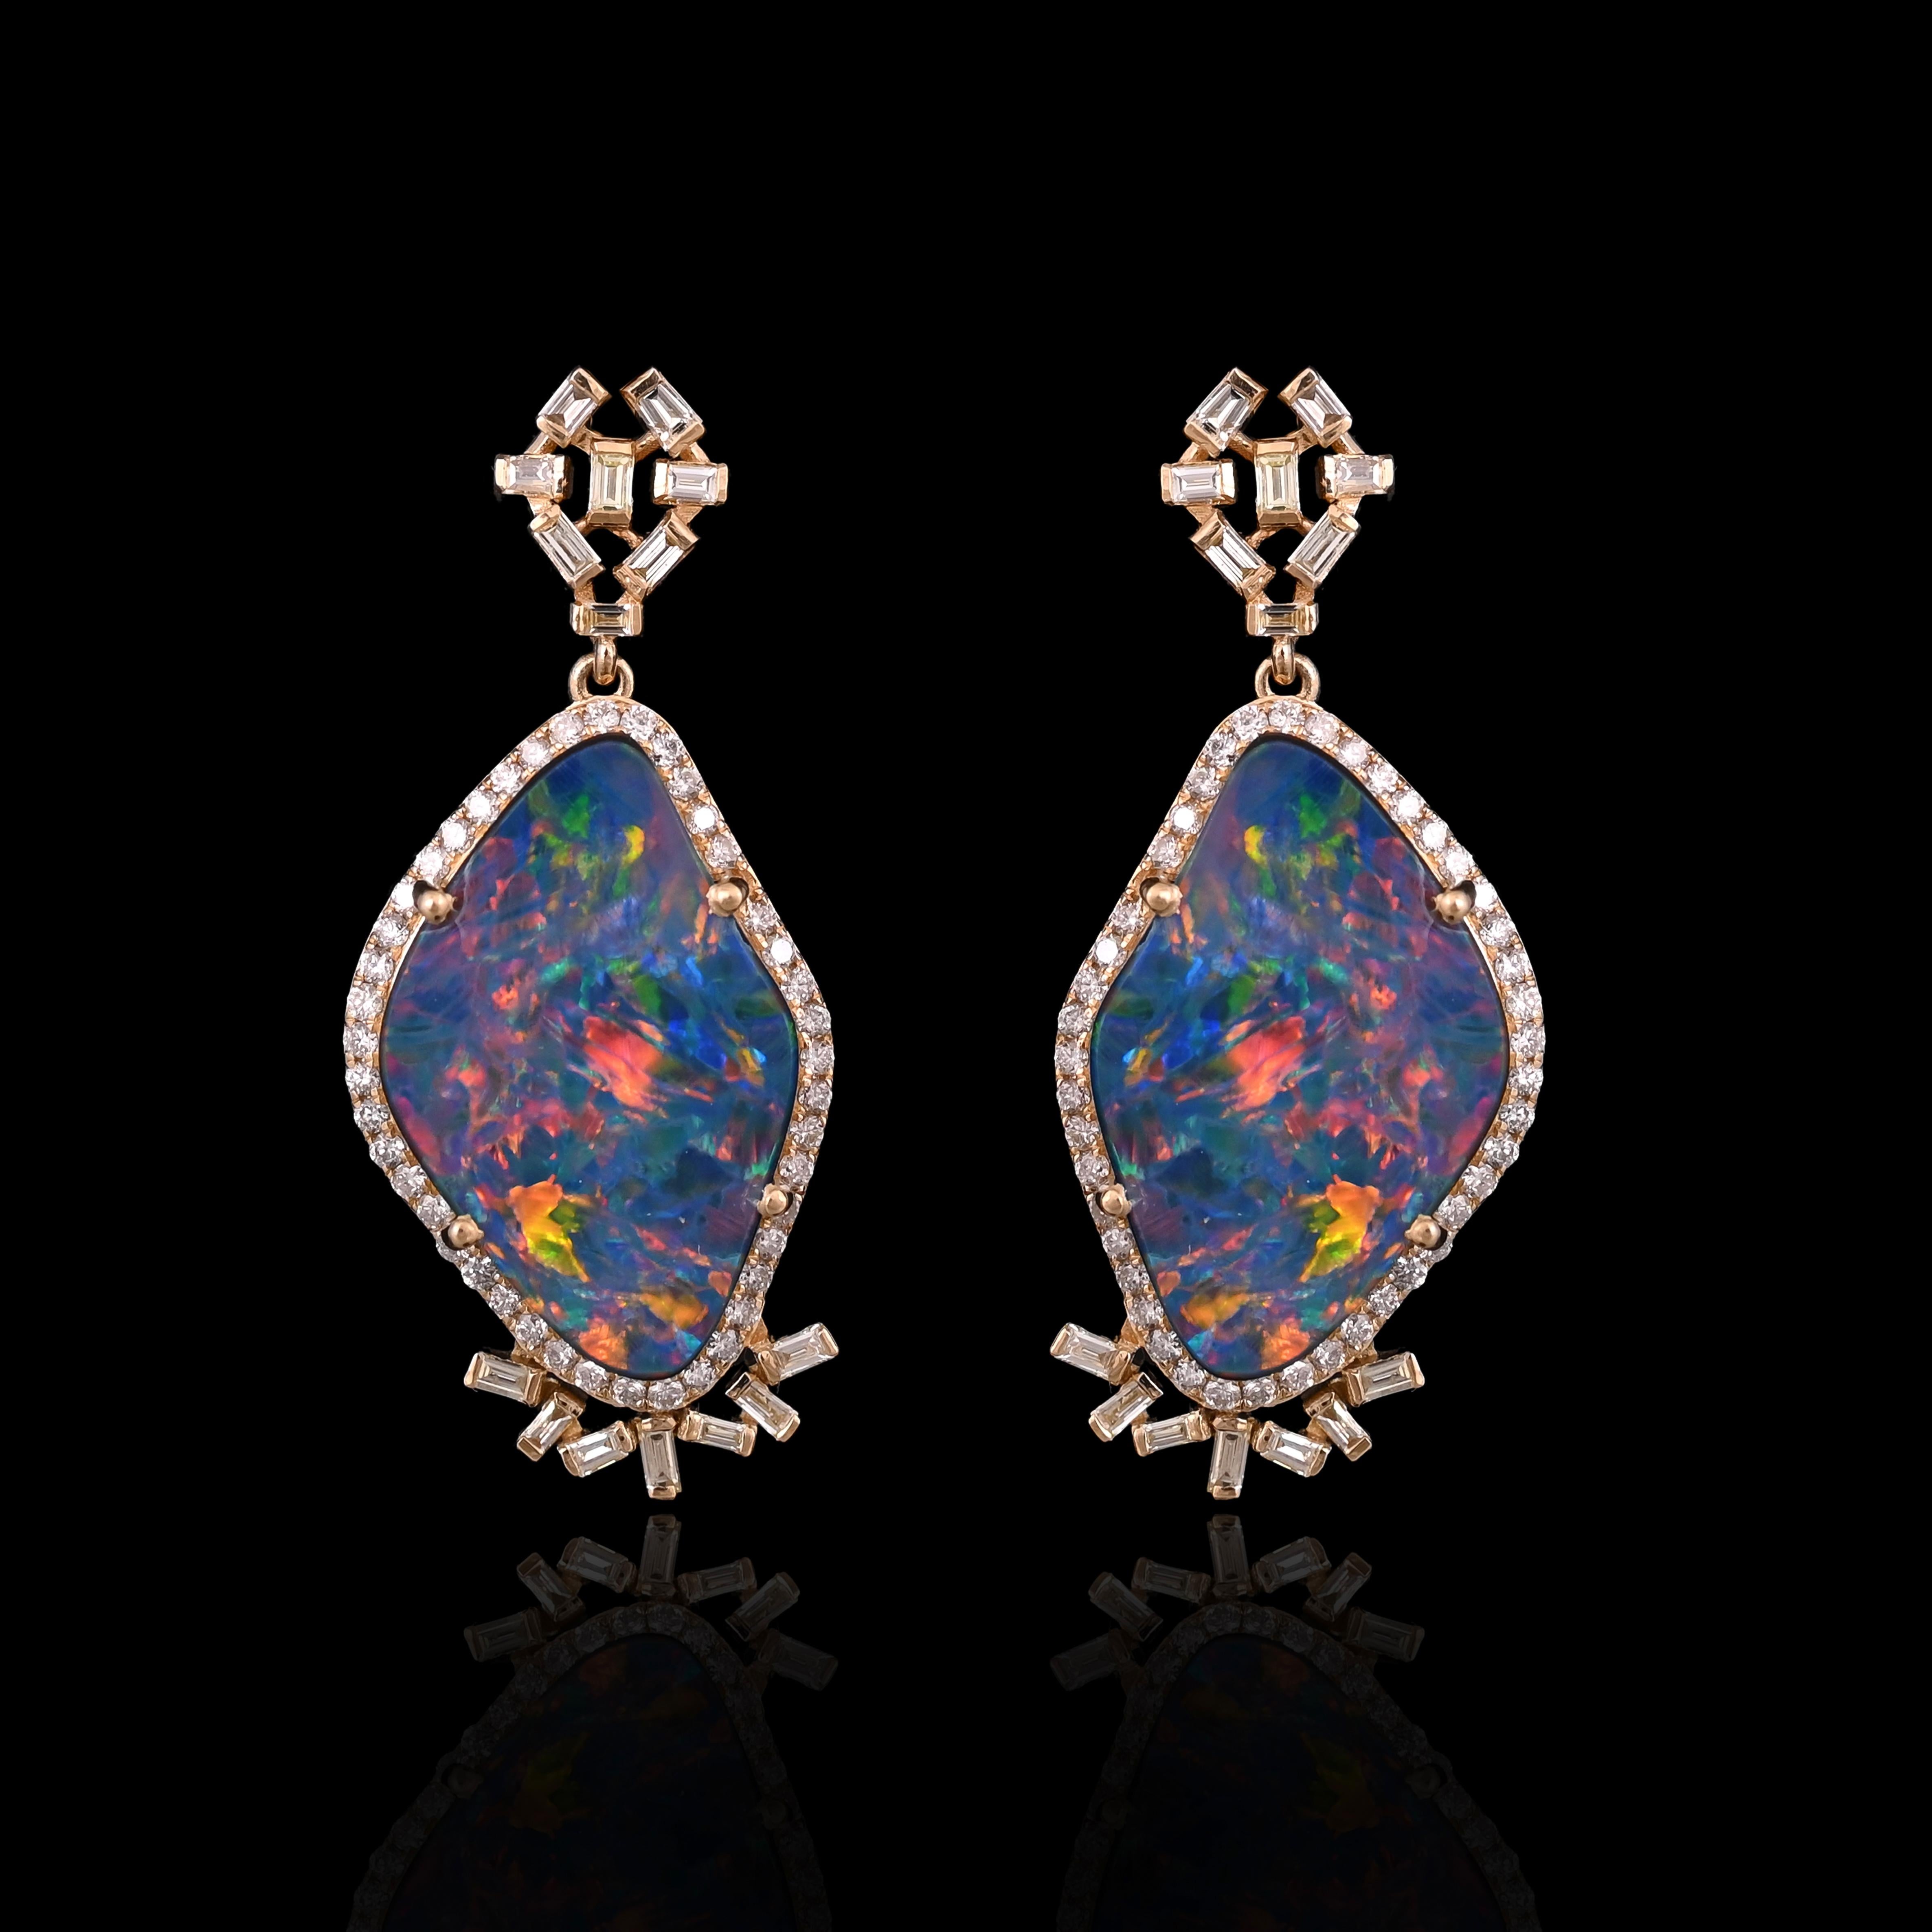 Boucles d'oreilles chandelier en doublet d'opales en or jaune 18 carats et diamants. Le poids de l'Opale Doublet est de 10,64 carats. Les opales sont des opales australiennes en doublet et présentent un jeu de couleurs orange et jaune. Le poids